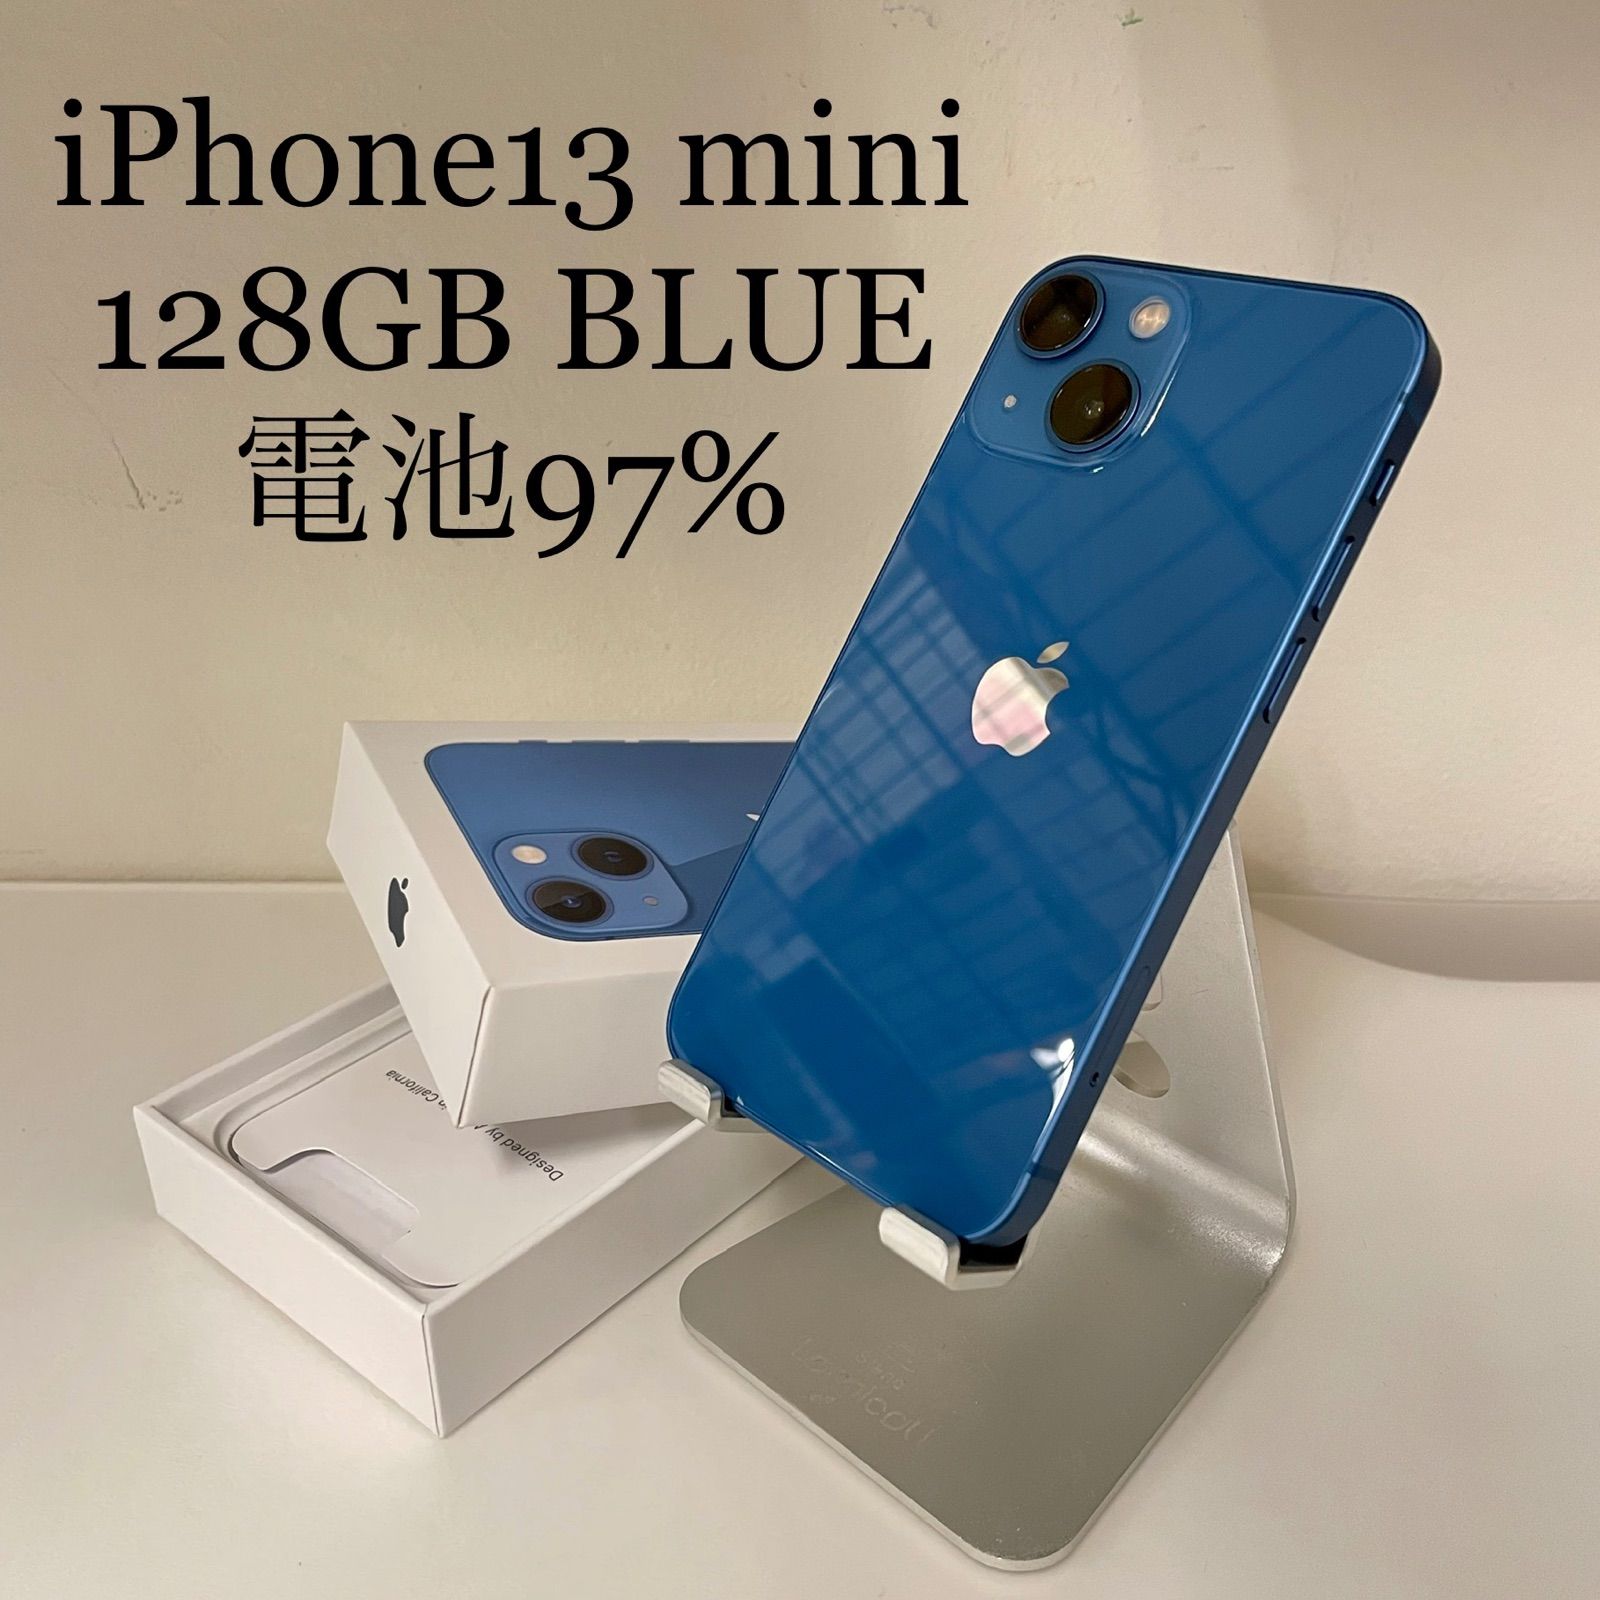 iPhone13 mini ブルー 128GB 電池残量97% - メルカリ